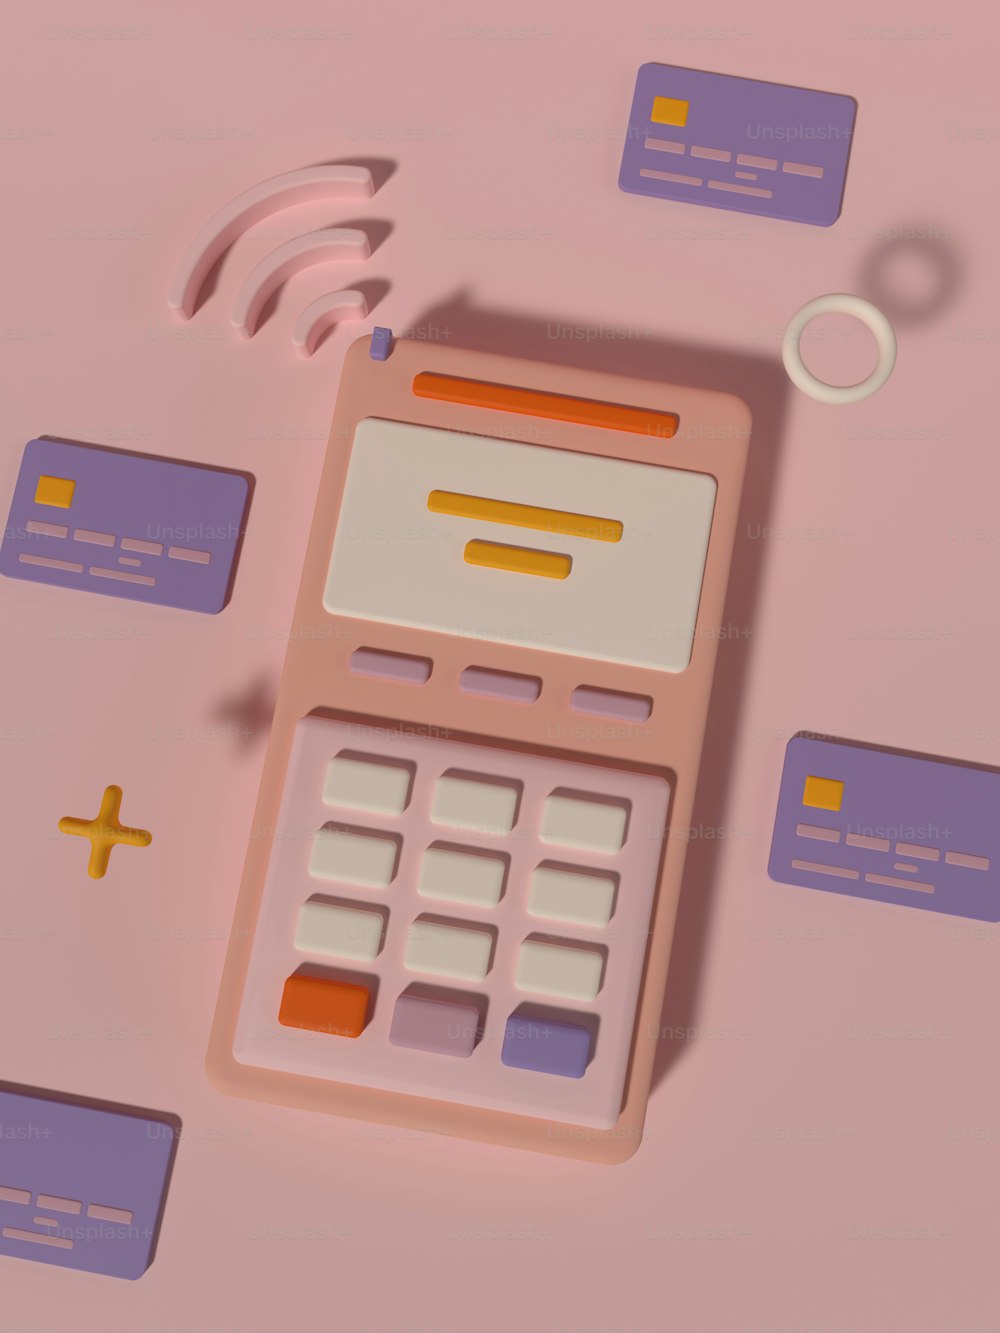 Una calculadora sentada encima de una mesa rosa